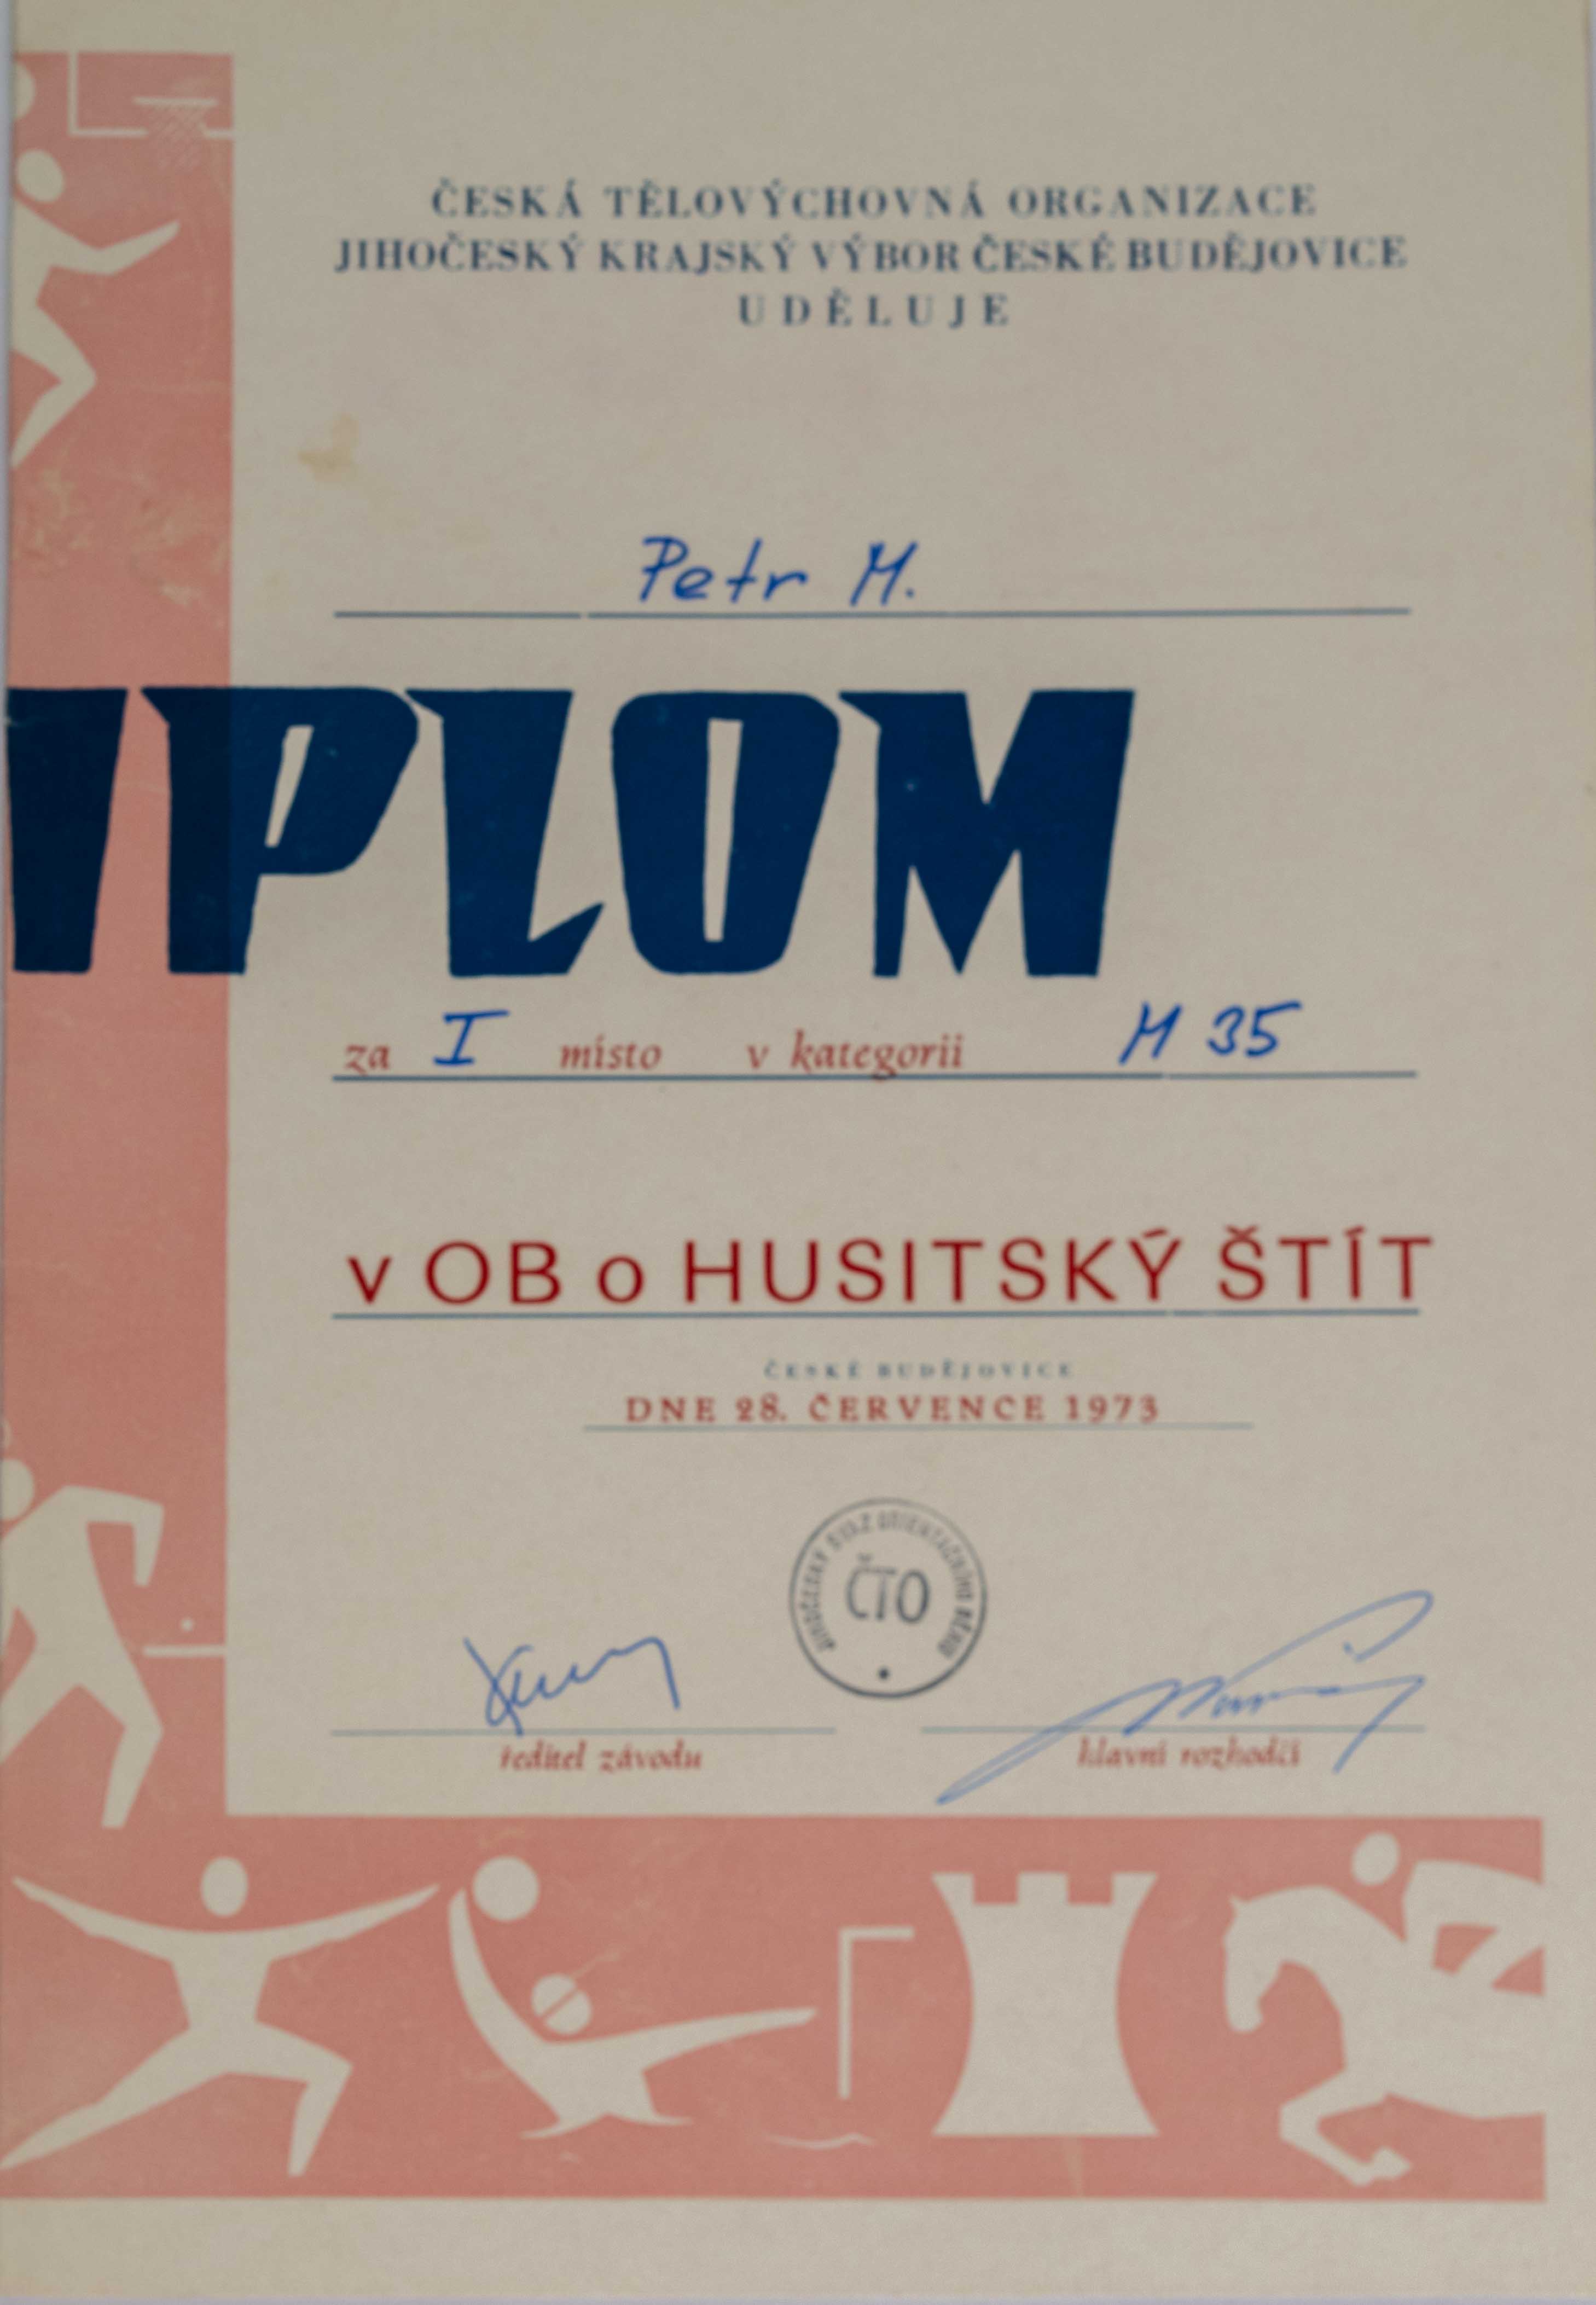 Diplom, Petr M., v OB o husitský štít, 1973